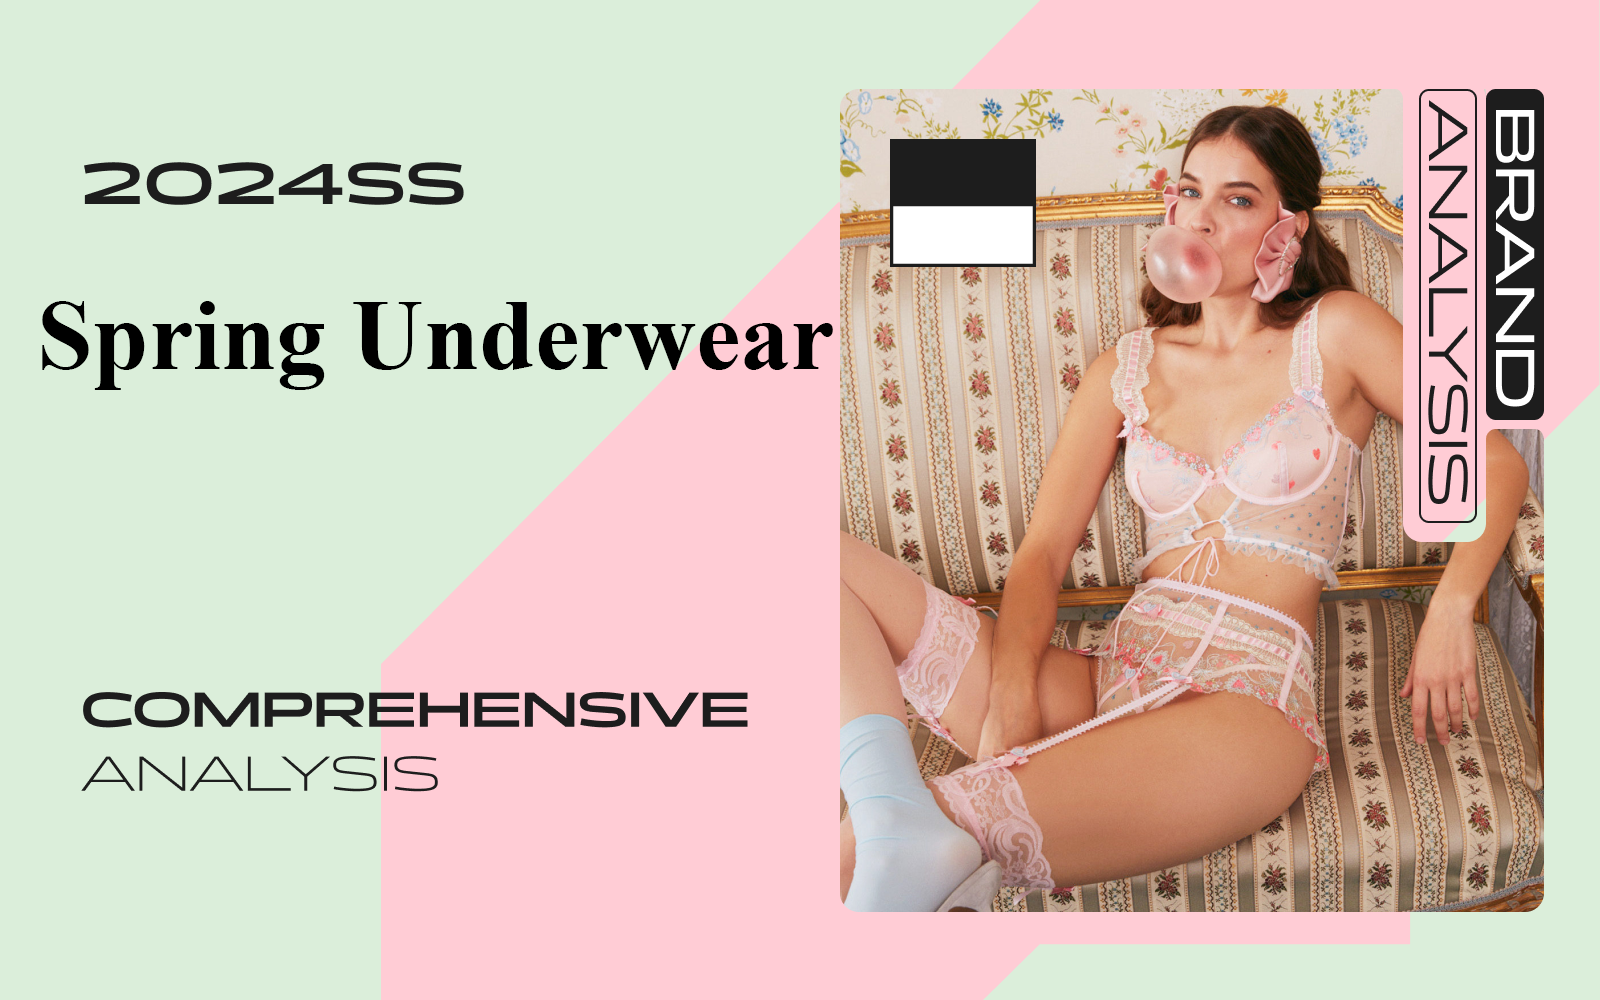 The Comprehensive Analysis of Underwear Designer Brand